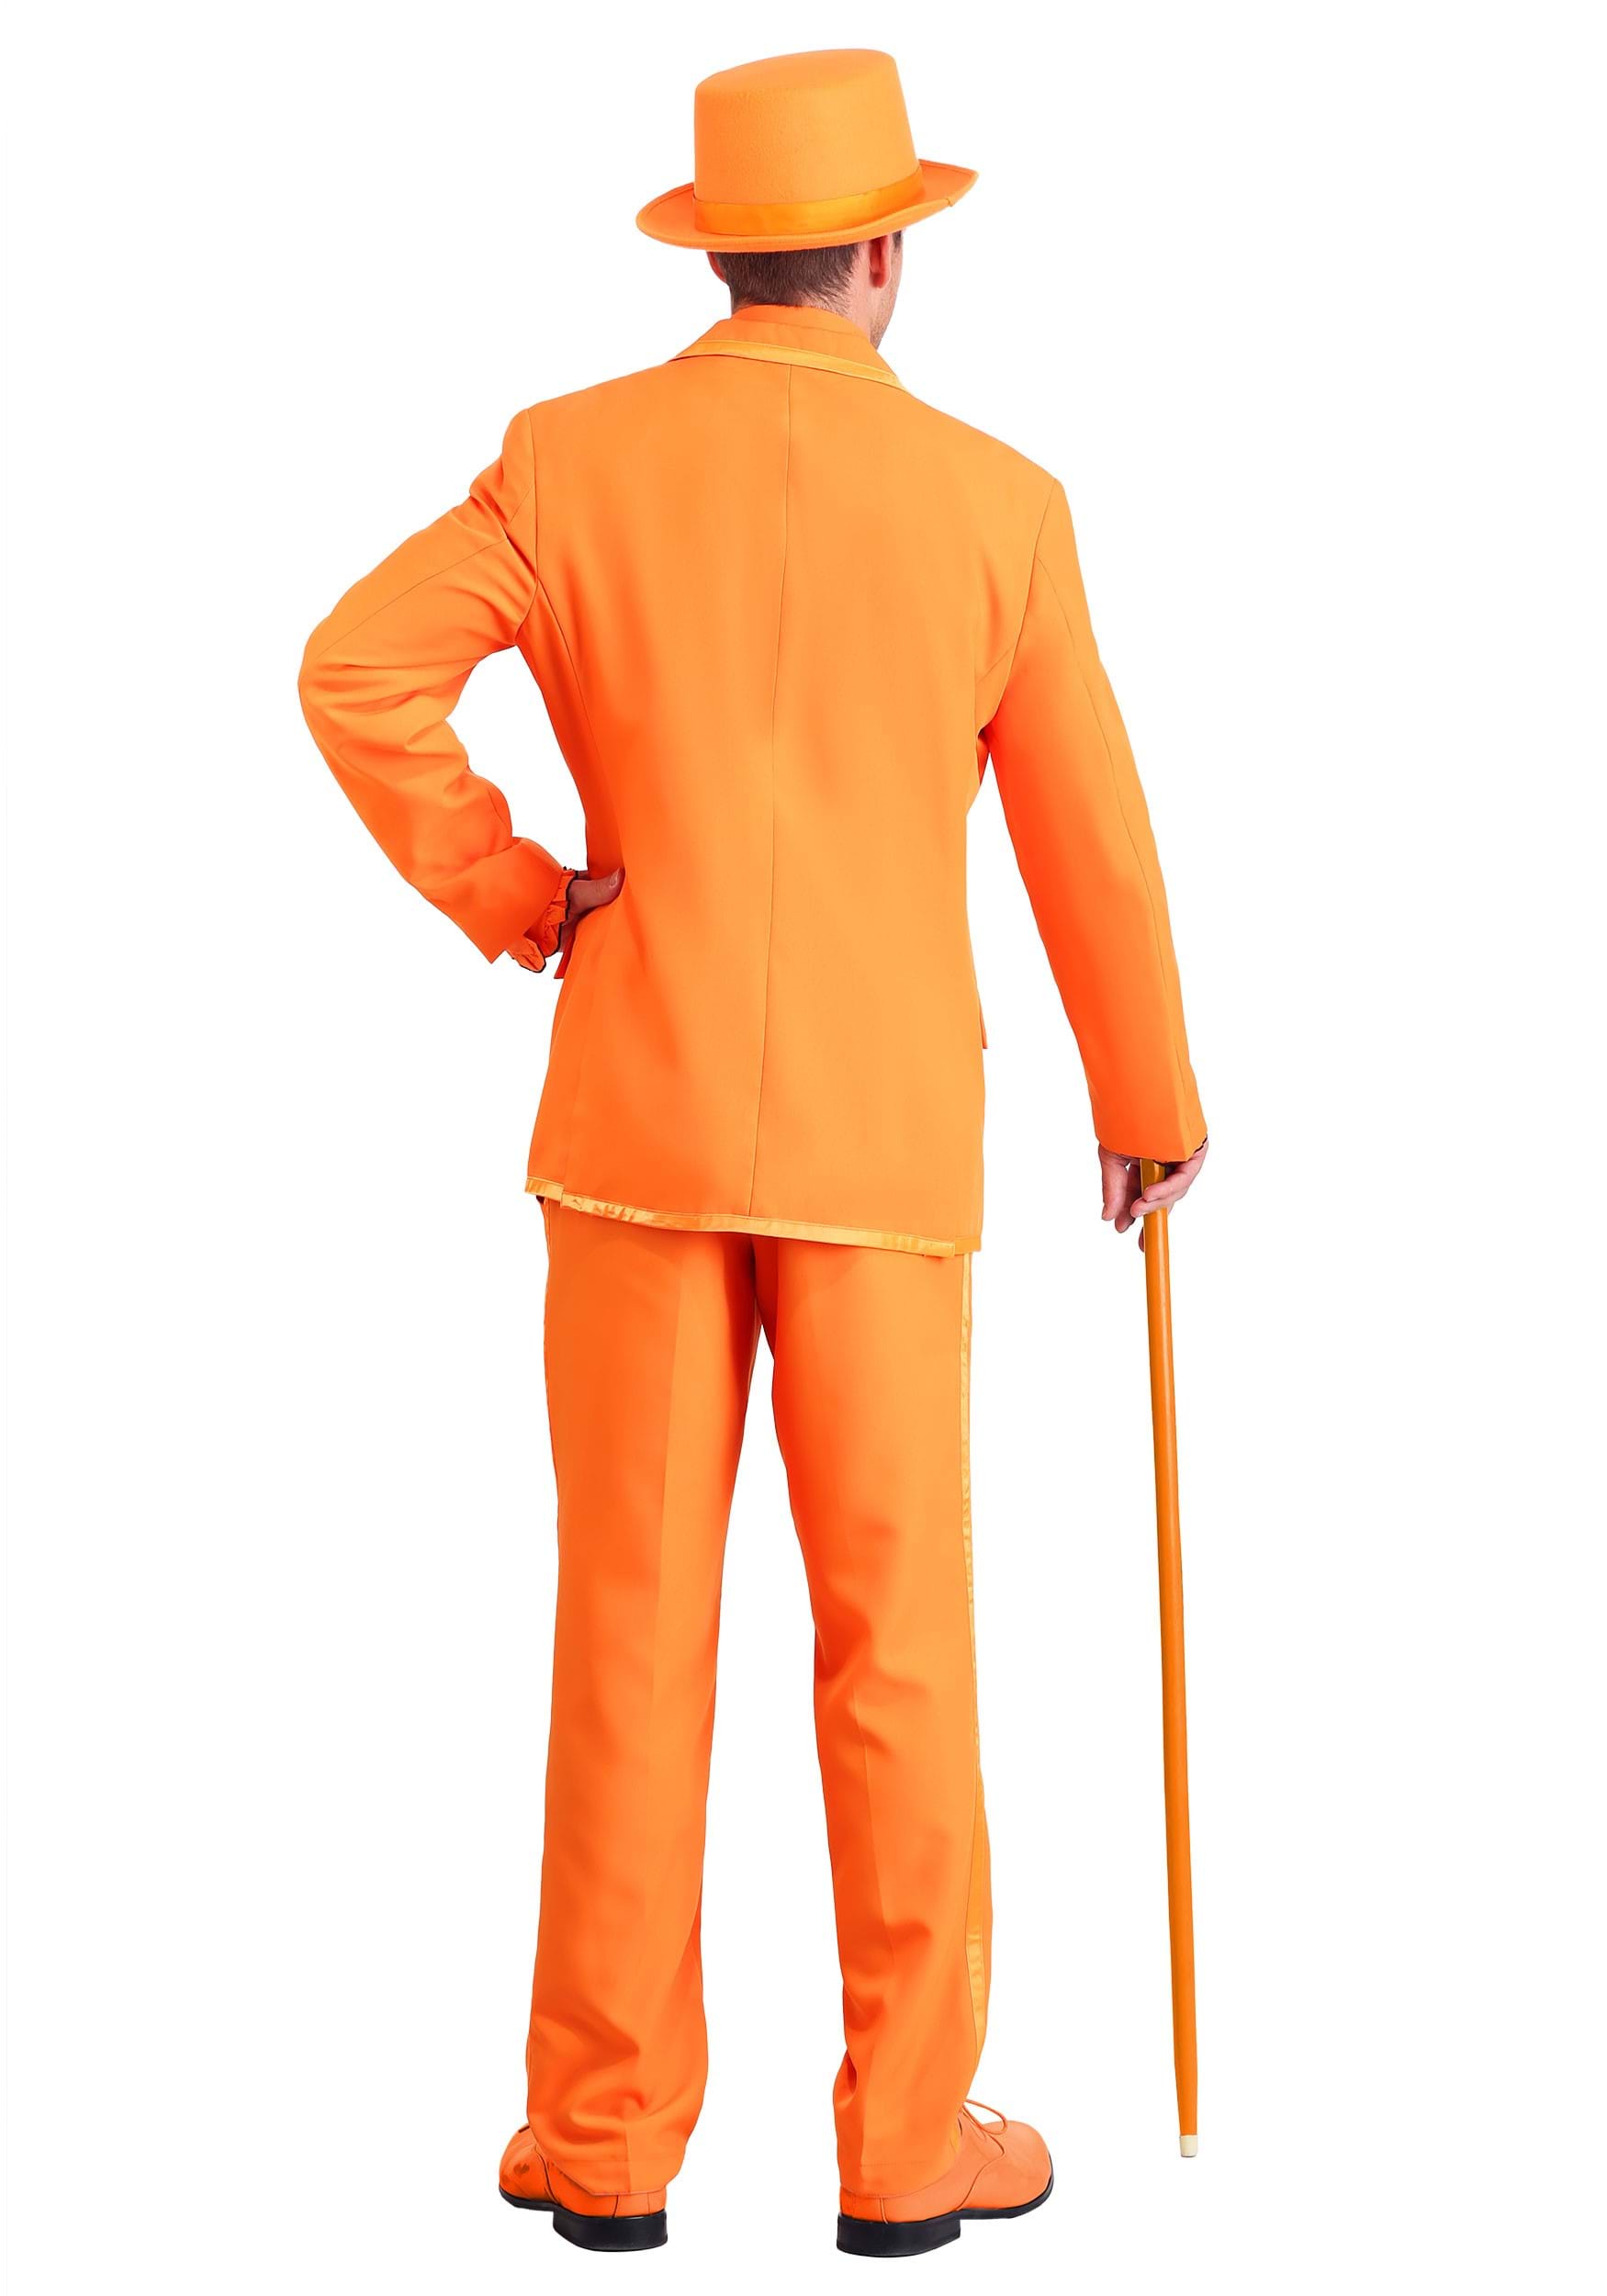 Orange Tuxedo Costume Adult, 47% OFF